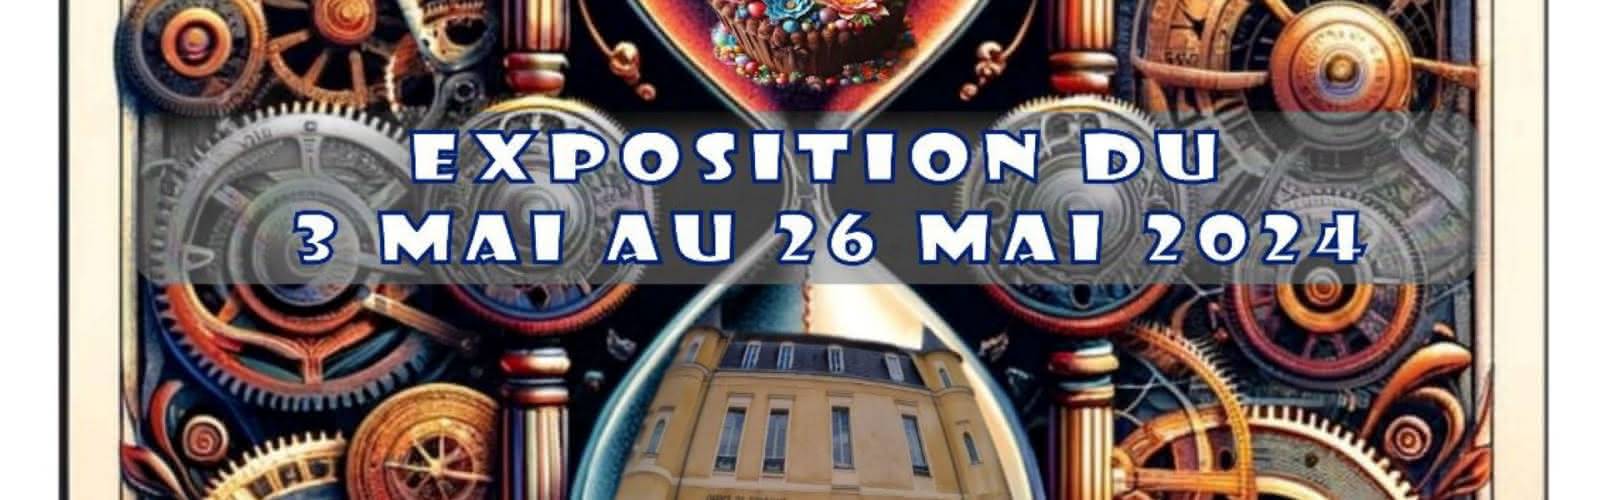 Exposition Art-couen Du 4 au 26 mai 2024